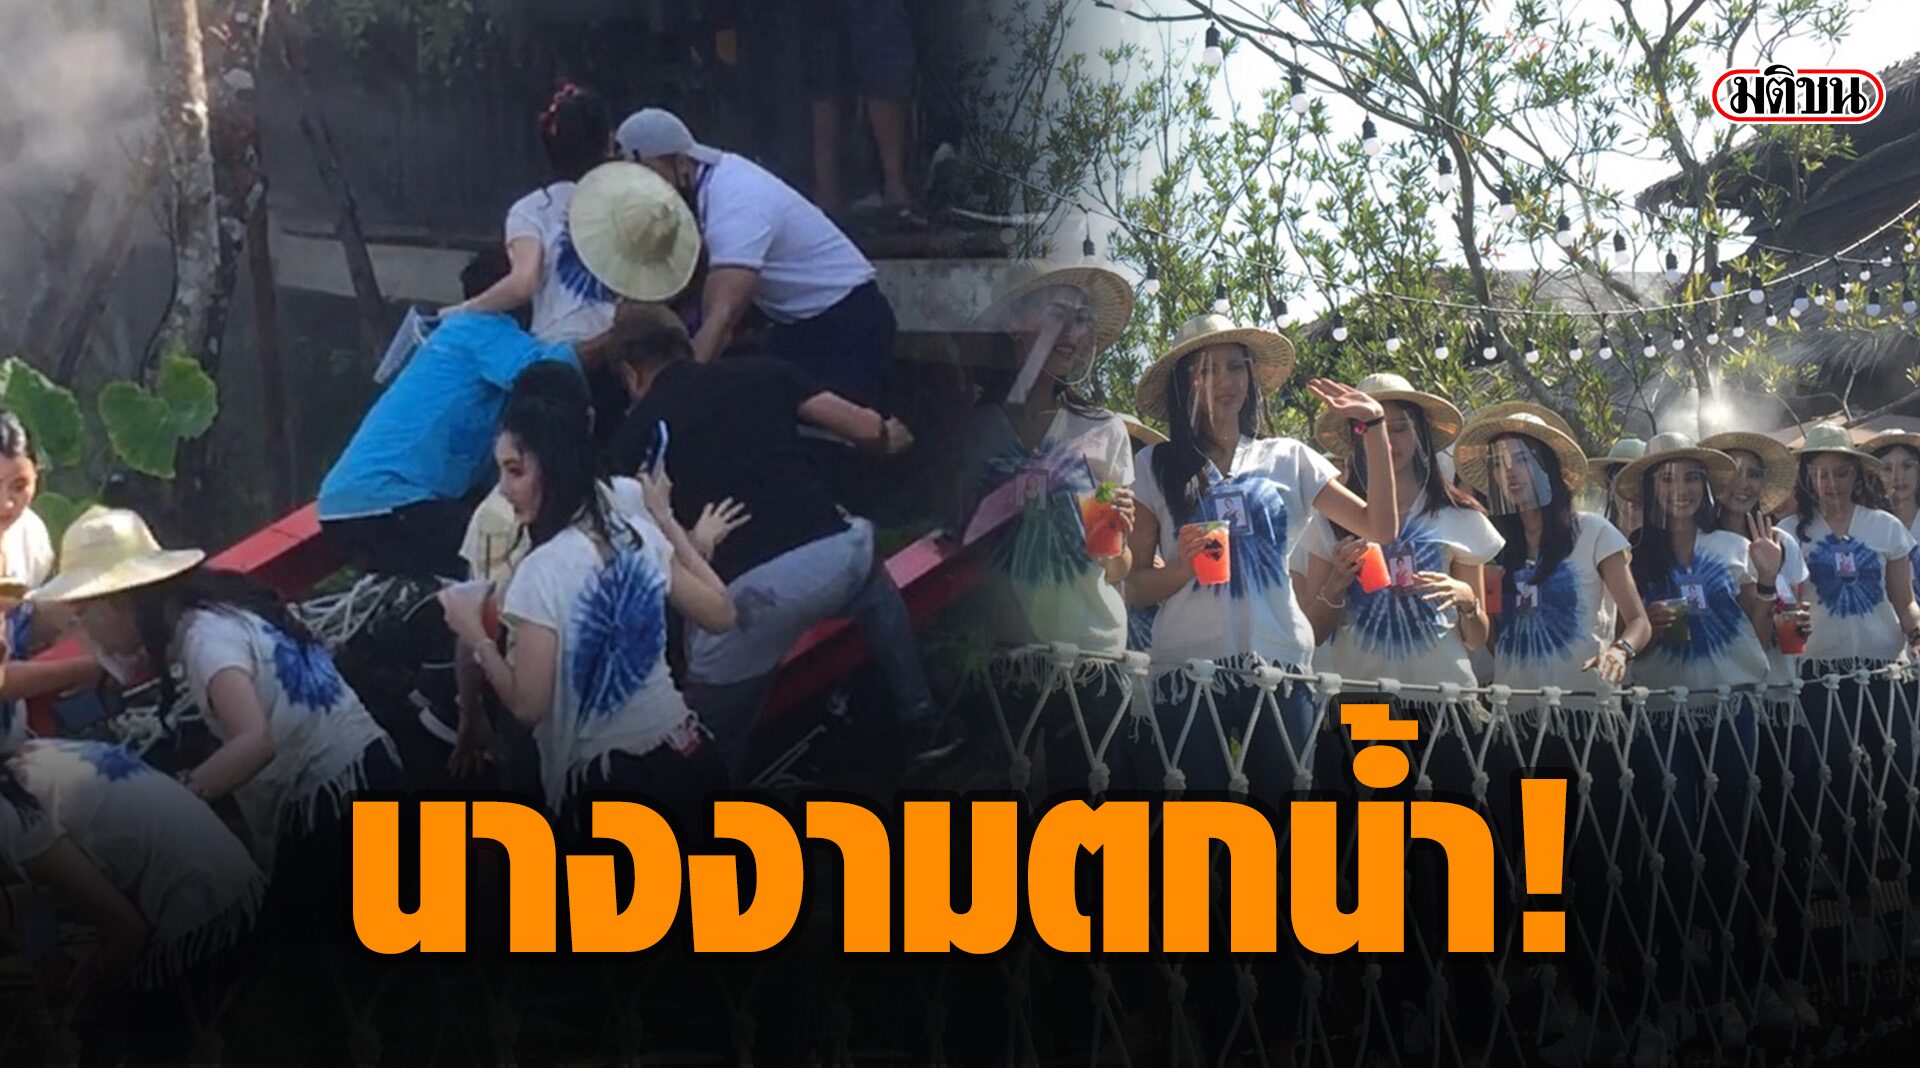 เกิดอุบัติเหตุสะพานล่ม สาวงามผู้เข้าประกวดนางสาวไทย ตกน้ำ-บาดเจ็บ 3 ราย